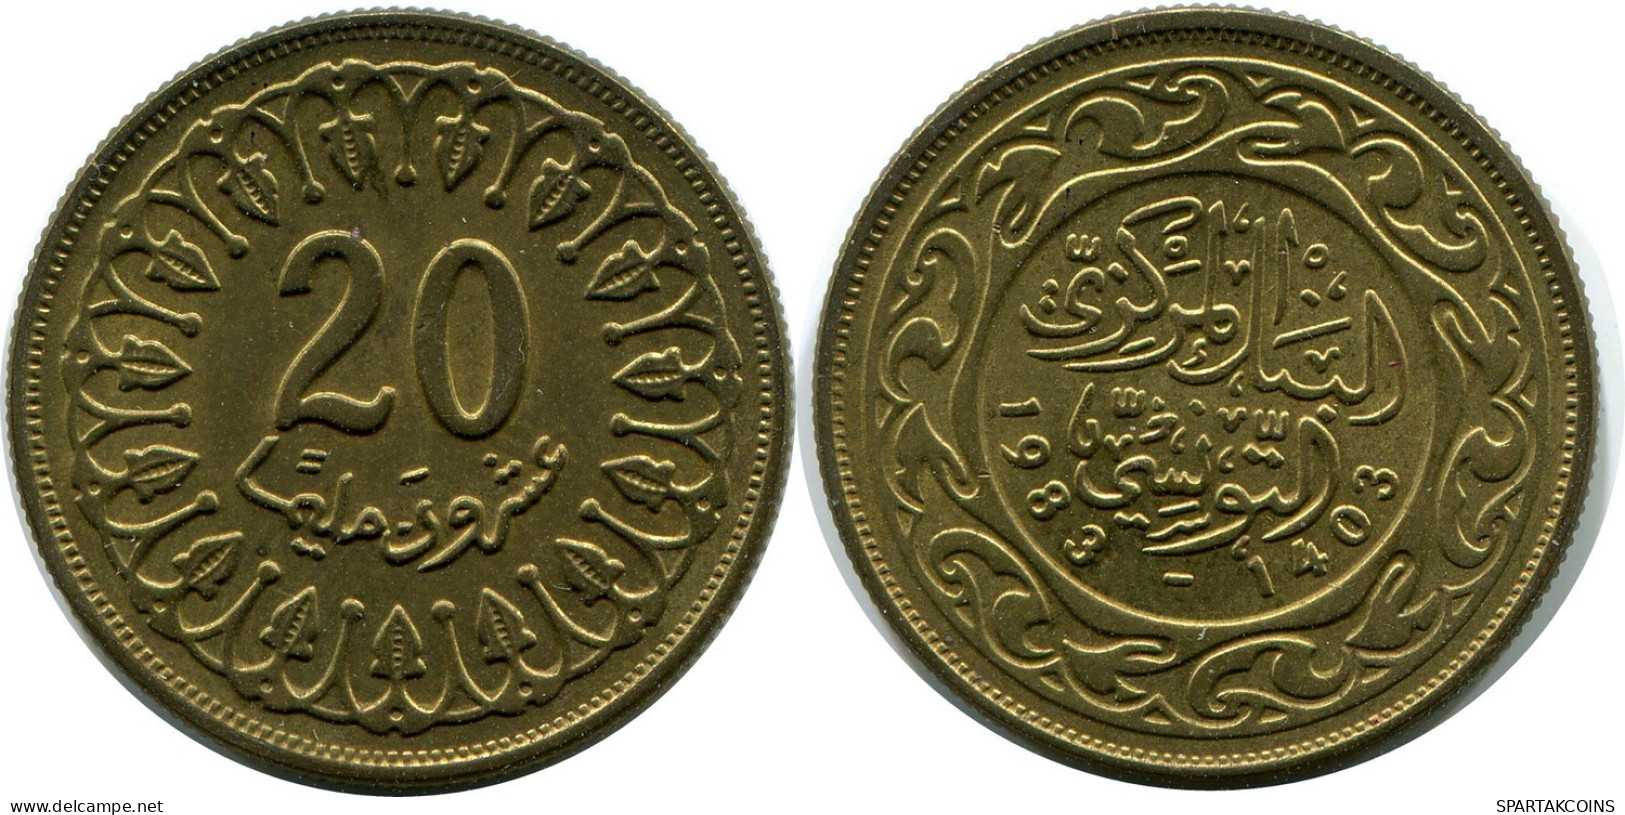 20 MILLIMES 1983 TUNISIA Islamic Coin #AP468.U.A - Tunisia